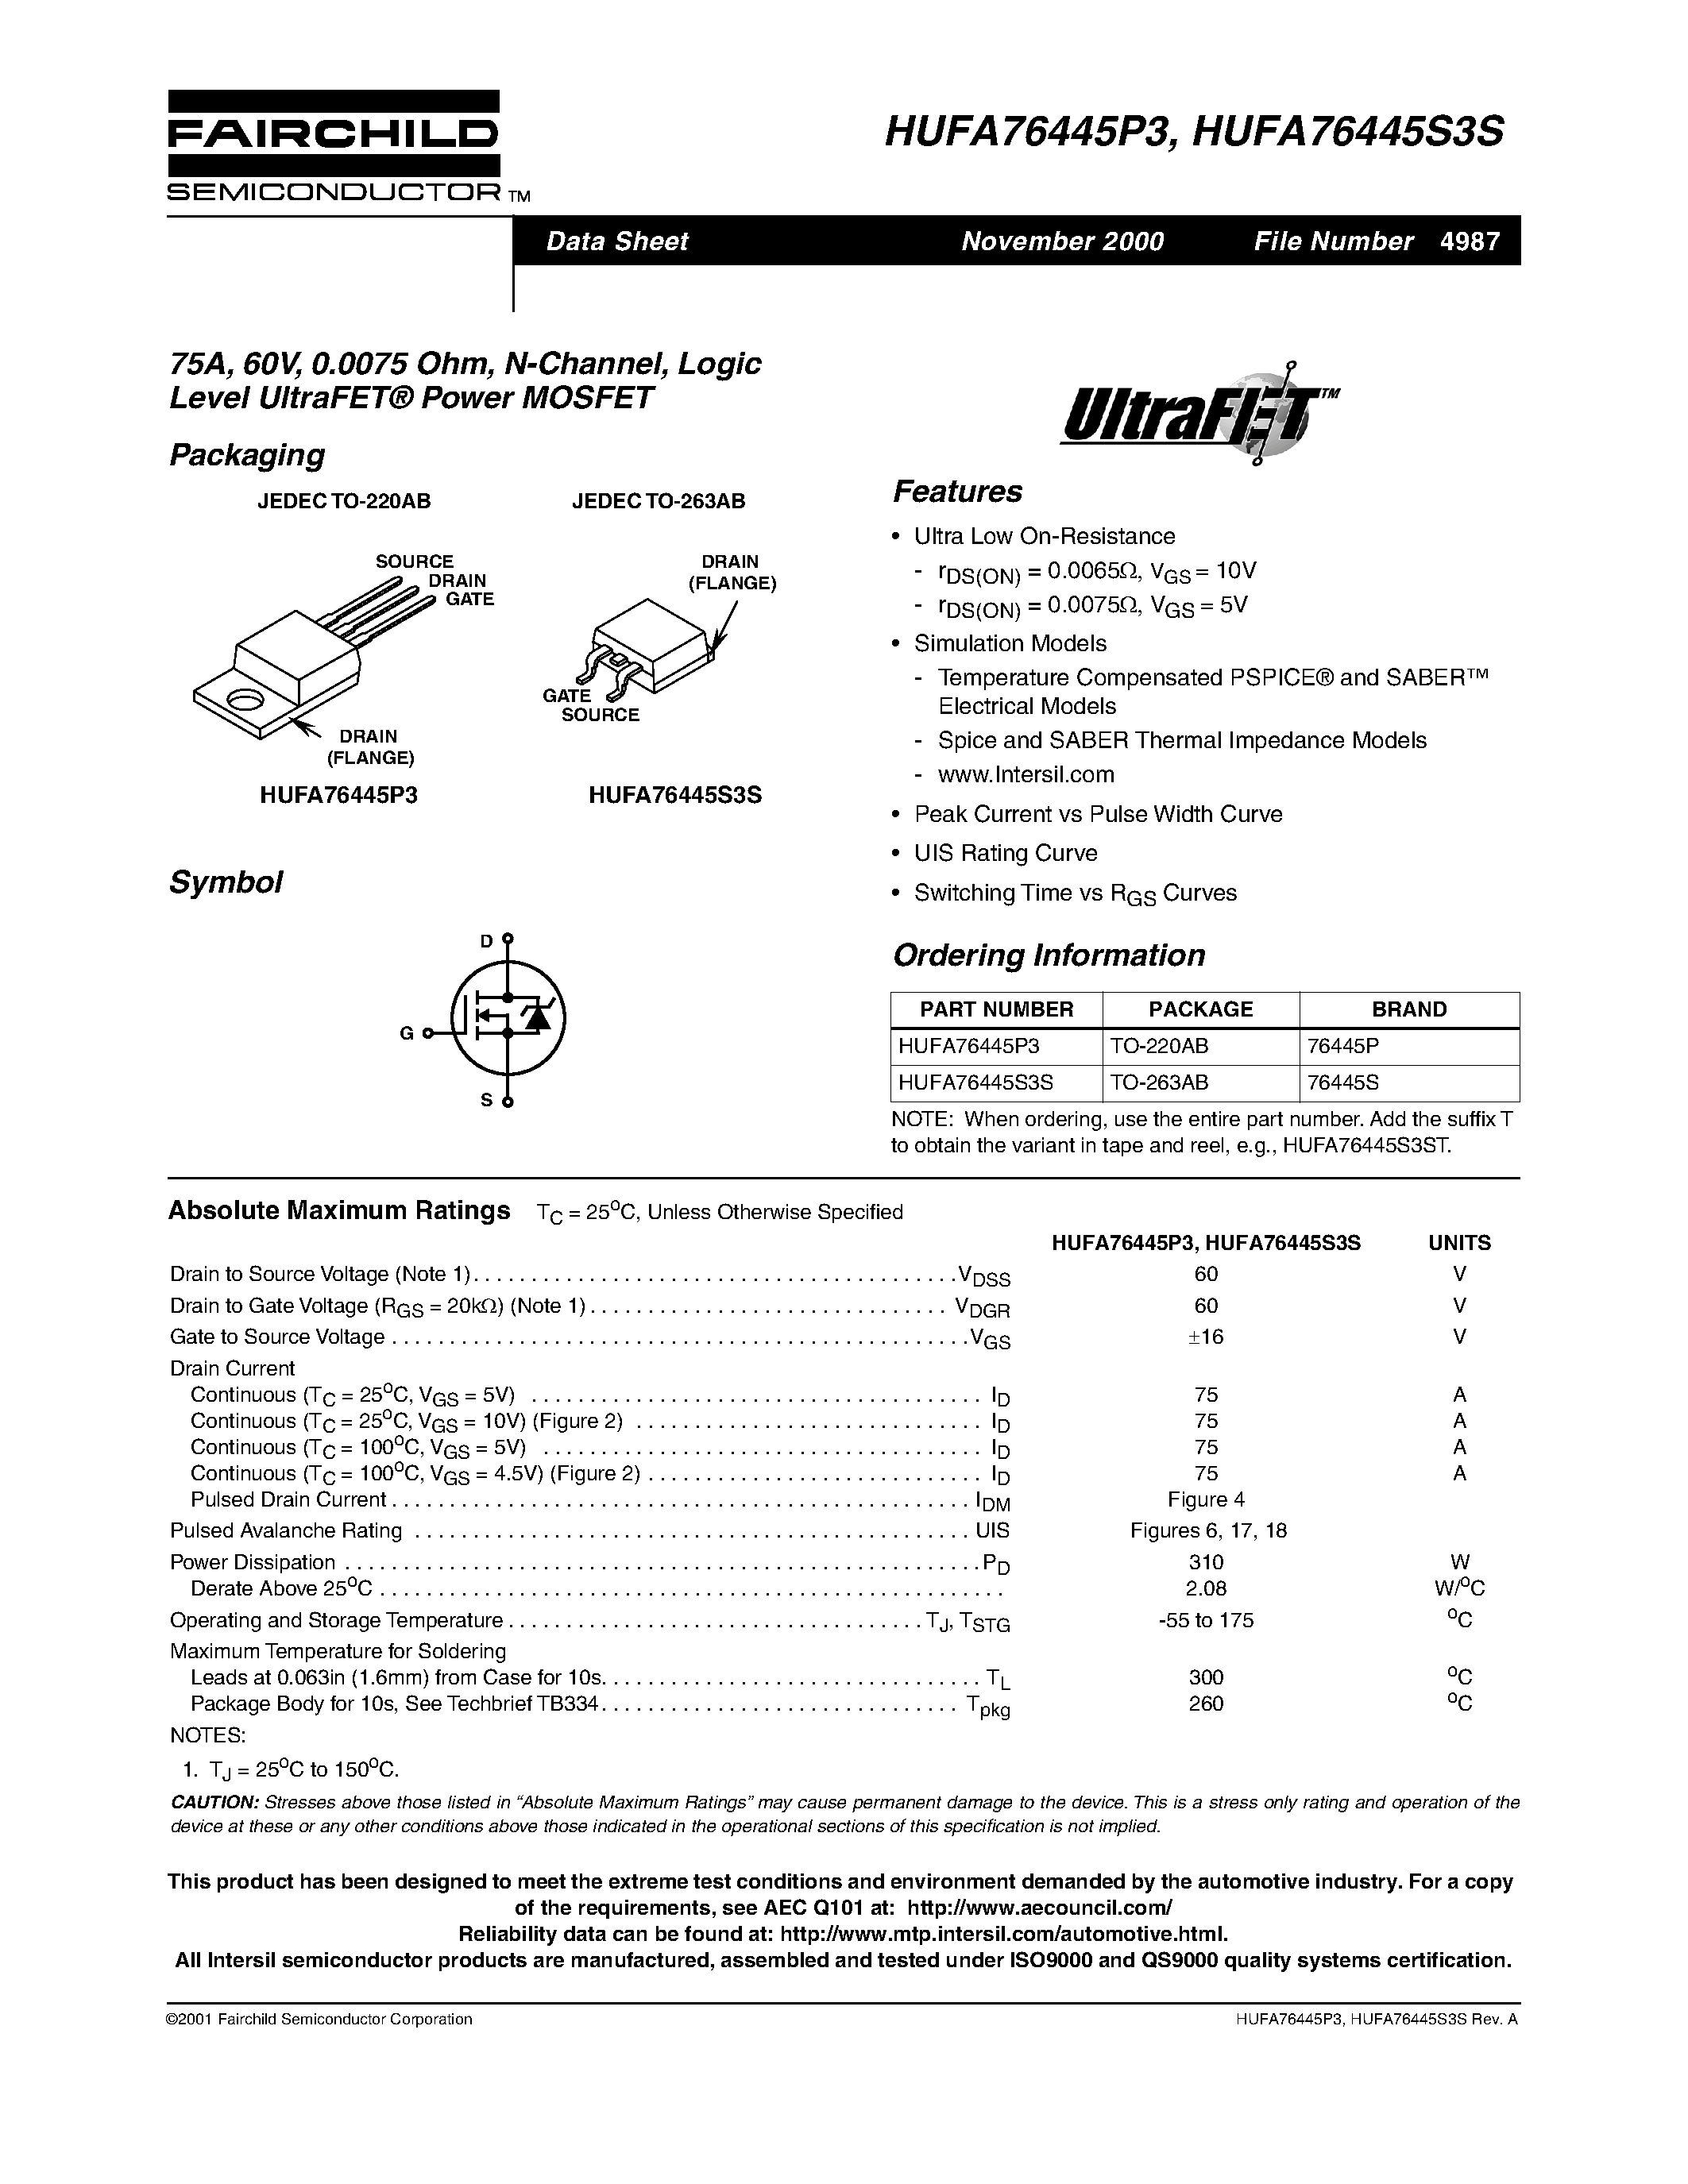 Даташит HUFA76445P3 - 75A/ 60V/ 0.0075 Ohm/ N-Channel/ Logic Level UltraFET Power MOSFET страница 1